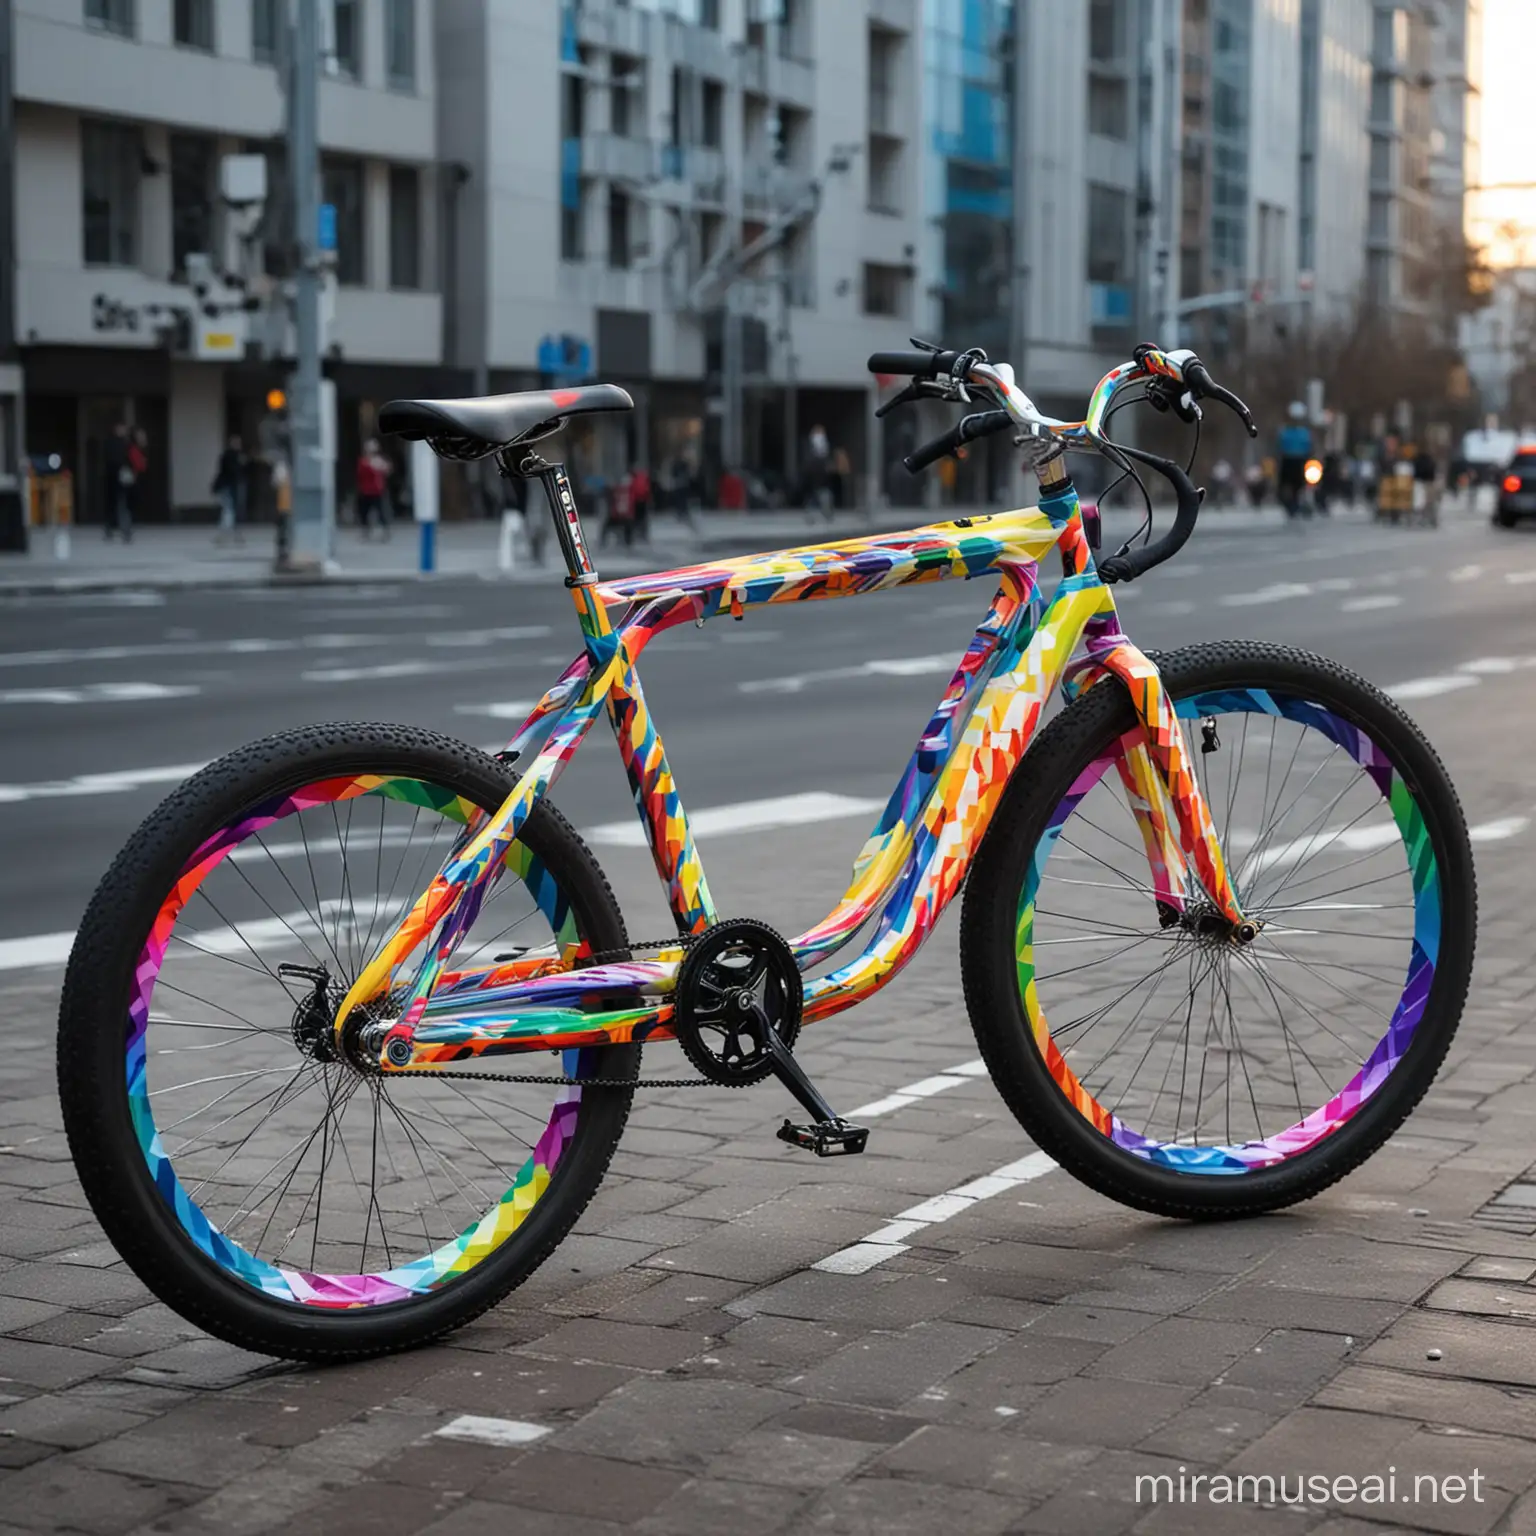 Imagina una bicicleta futurista diseñada por el artista Felipe Pantone. La bicicleta tiene un diseño único y llamativo, con colores brillantes y patrones geométricos que crean una sensación de movimiento y velocidad. La estructura de la bicicleta es aerodinámica y moderna, con líneas limpias y formas dinámicas. La imagen muestra la bicicleta en un entorno urbano, rodeada de rascacielos y luces de neón que reflejan los colores vibrantes de la bicicleta. La escena transmite una sensación de energía y modernidad, capturando la esencia del estilo distintivo de Felipe Pantone